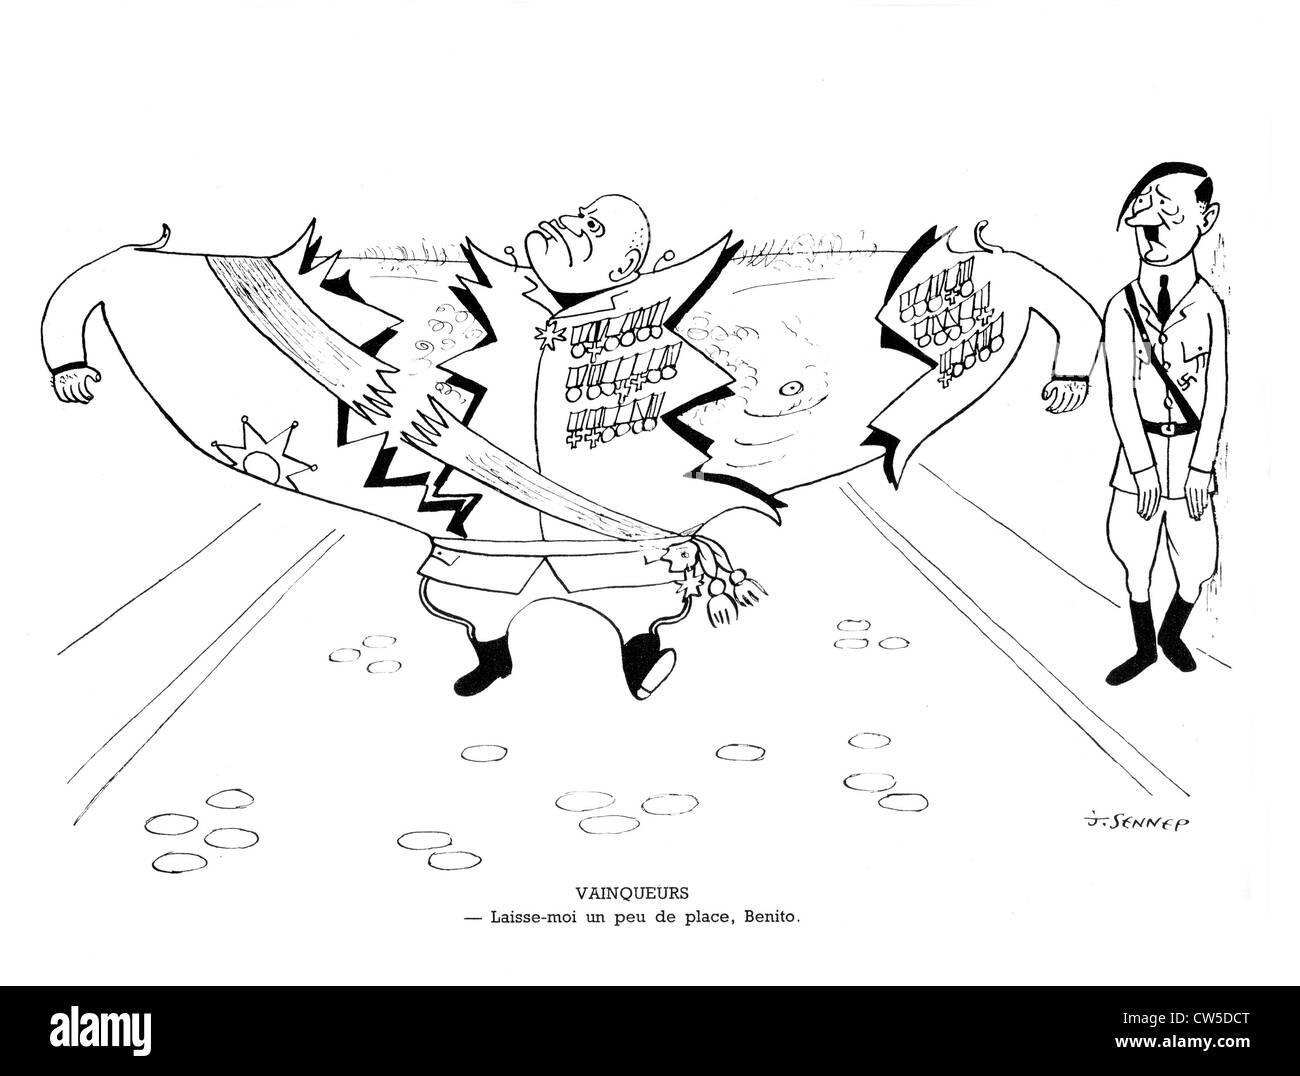 Vignetta satirica da Sennep. Hitler e Mussolini. in "La guerre en chemise noire' ('guerra in camicia nera') Foto Stock